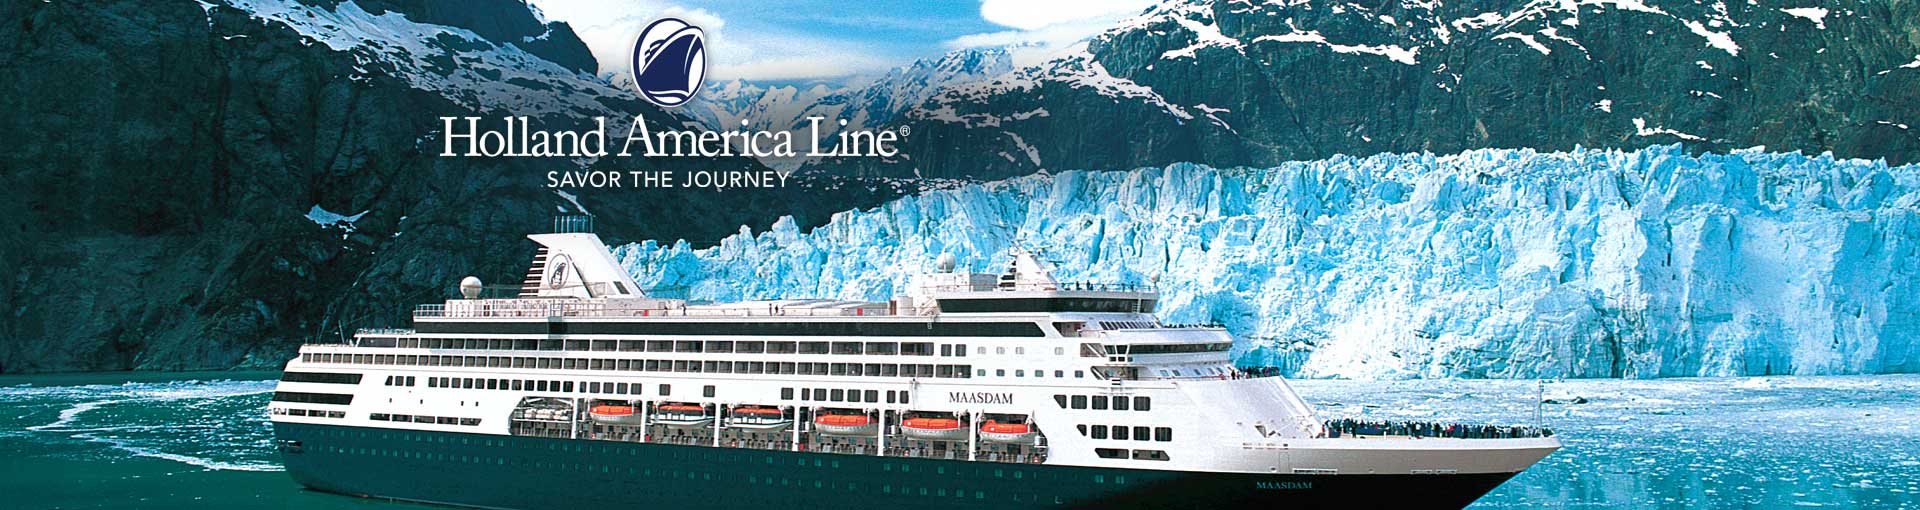 Holland America Cruise Ships Gets Ok To Go Through Panama Canal Head To U S Upi Com